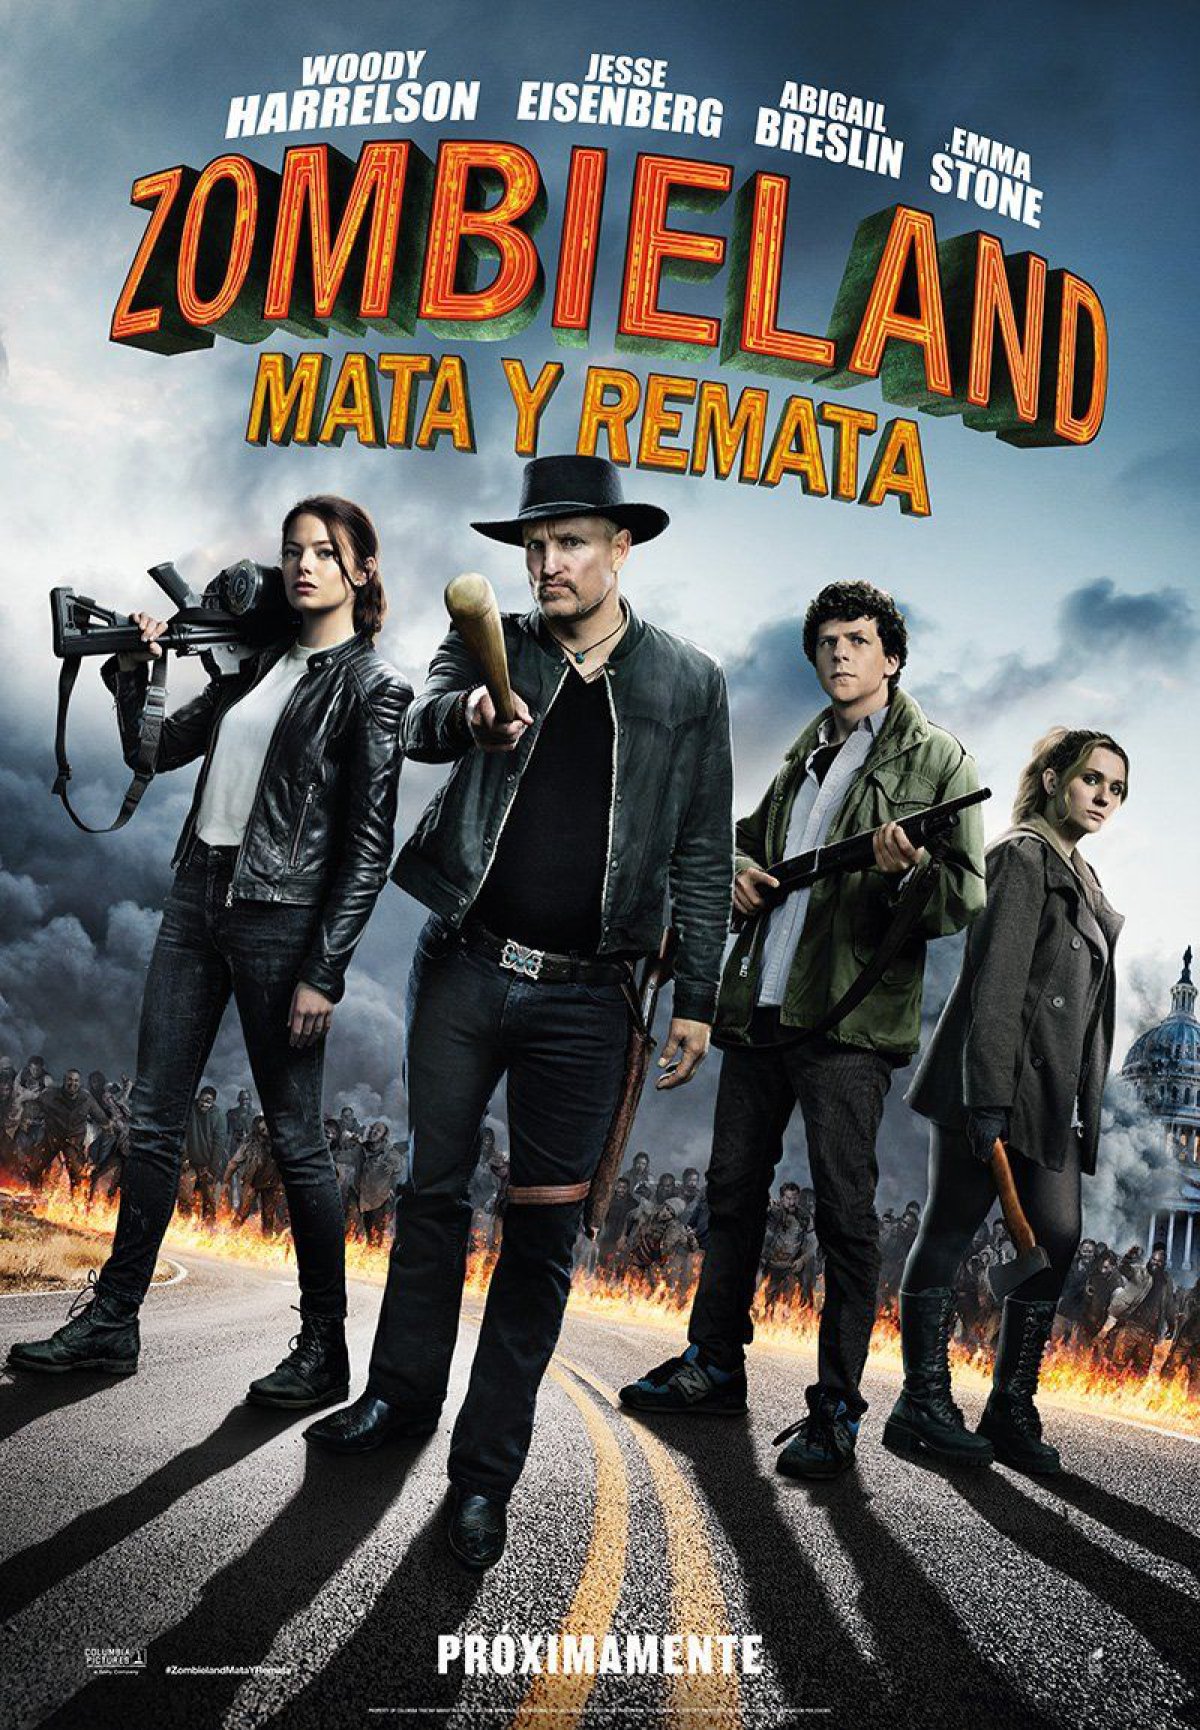 Zombieland: mata y remata (Ruben Fleischer)